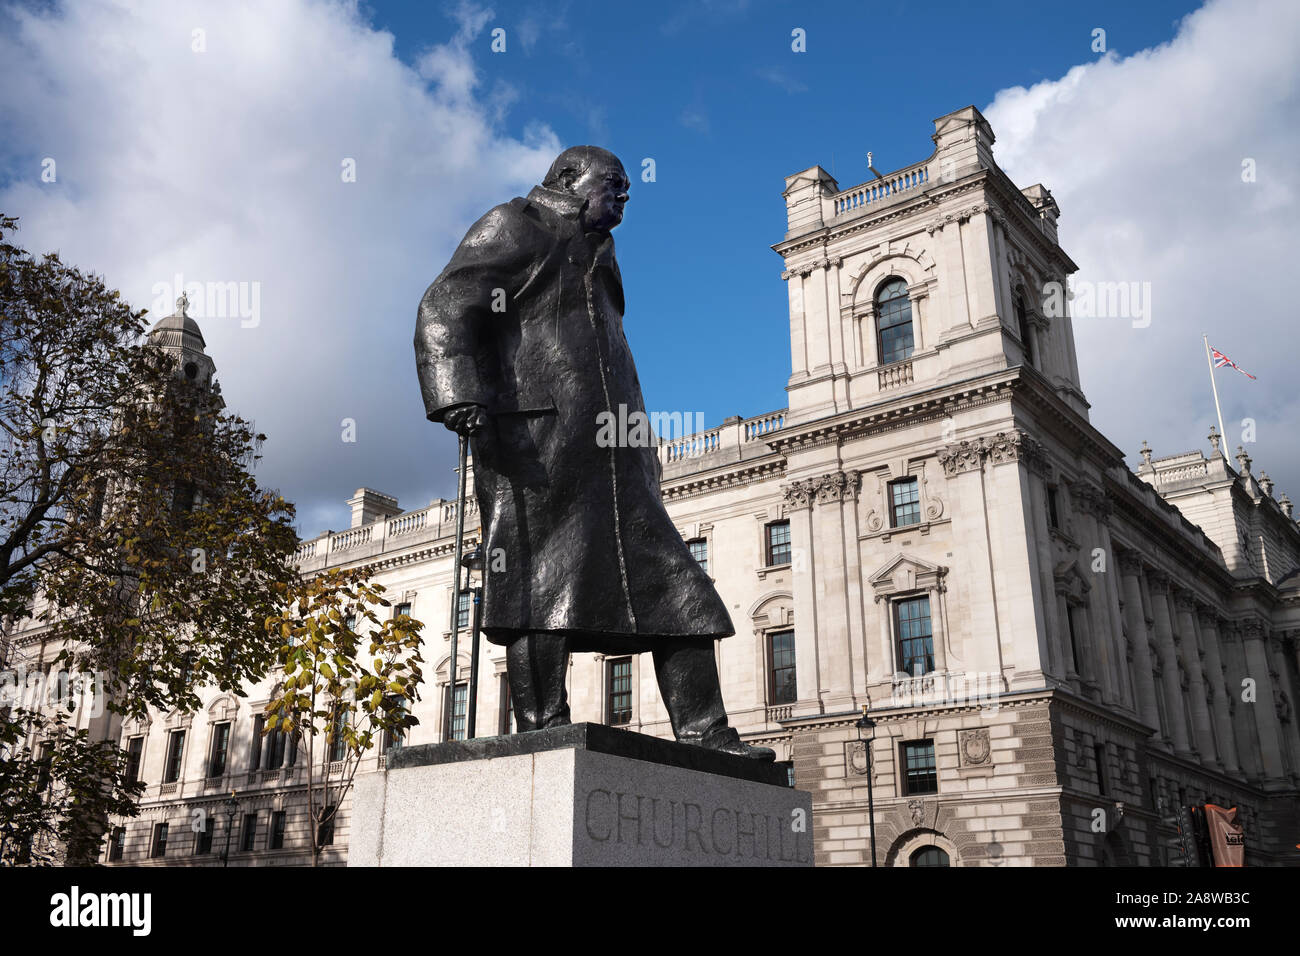 La statua di Winston Churchill in piazza del Parlamento, Londra, è una scultura in bronzo dell'ex primo ministro inglese Winston Churchill, creato da Foto Stock